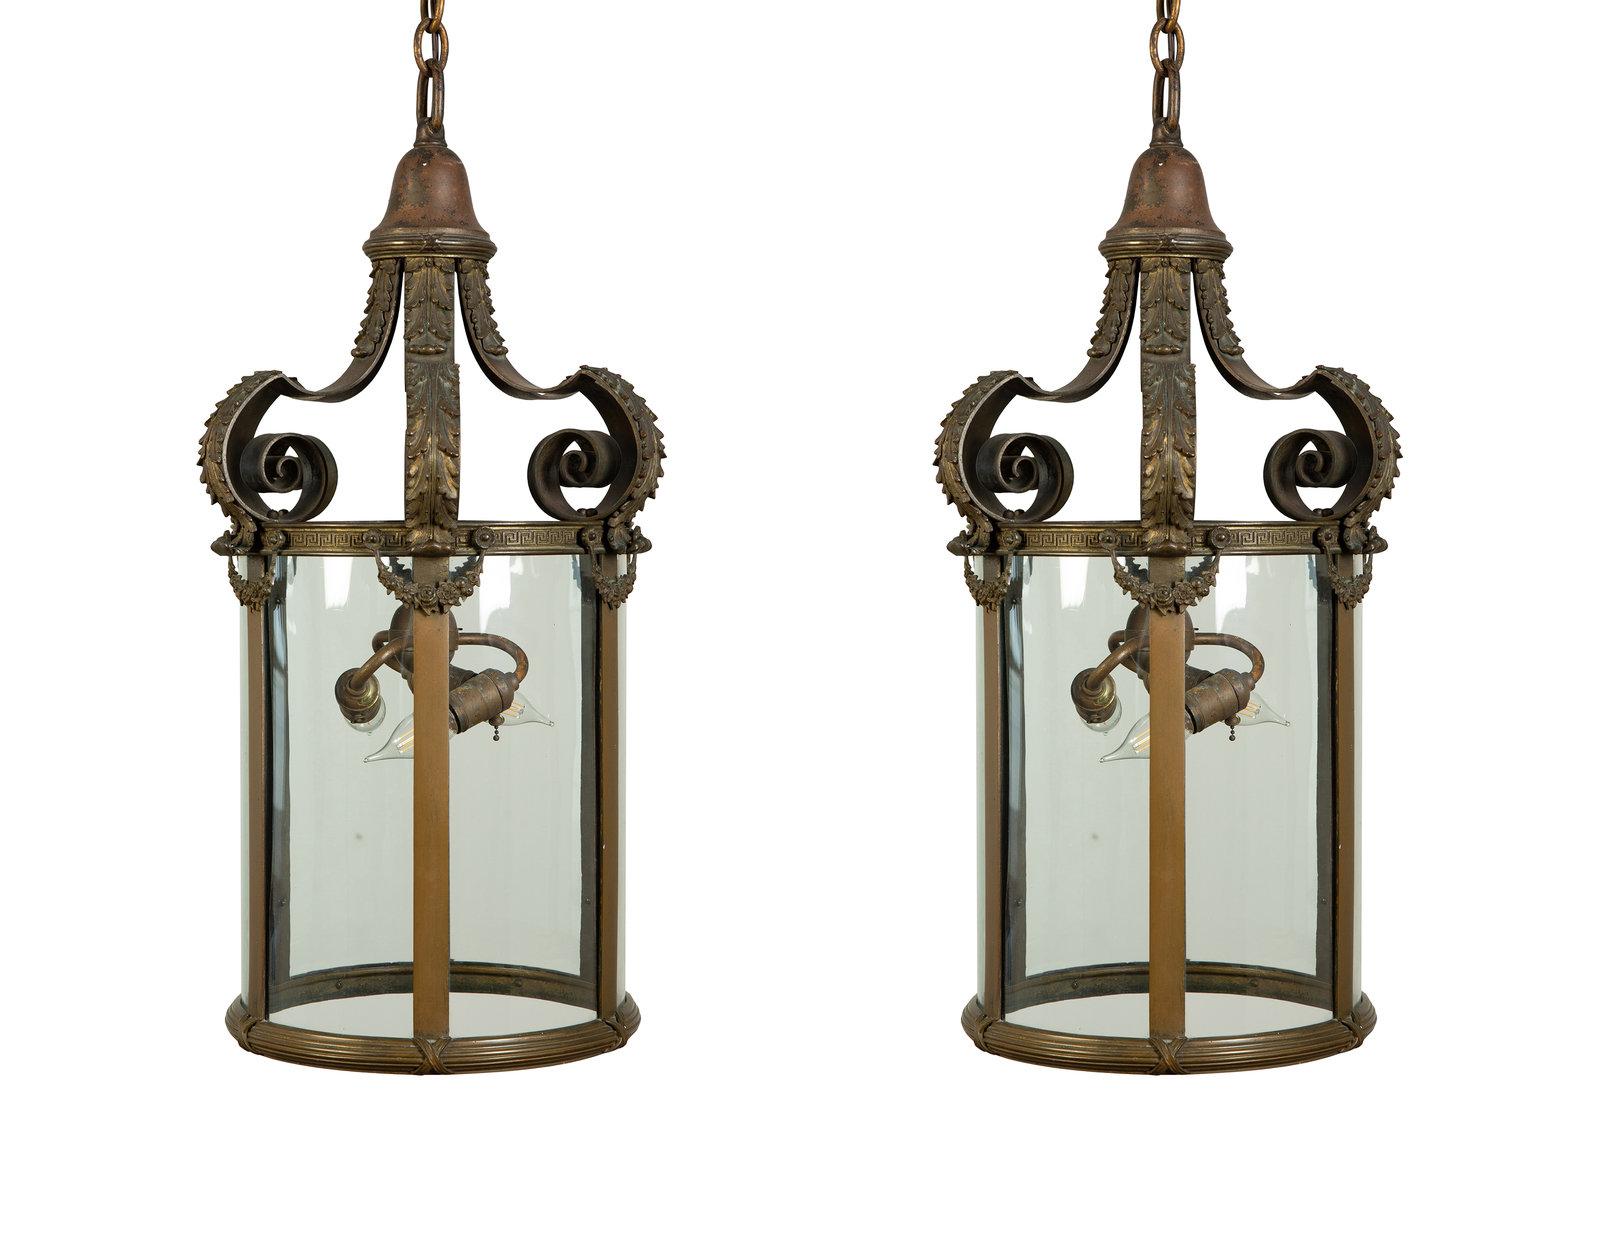 Une fine et élégante lanterne de style Louis XVI en bronze doré. Panneaux de verre incurvés. 
Paire disponible. France, vers 1920.
Dimensions : Hauteur 28